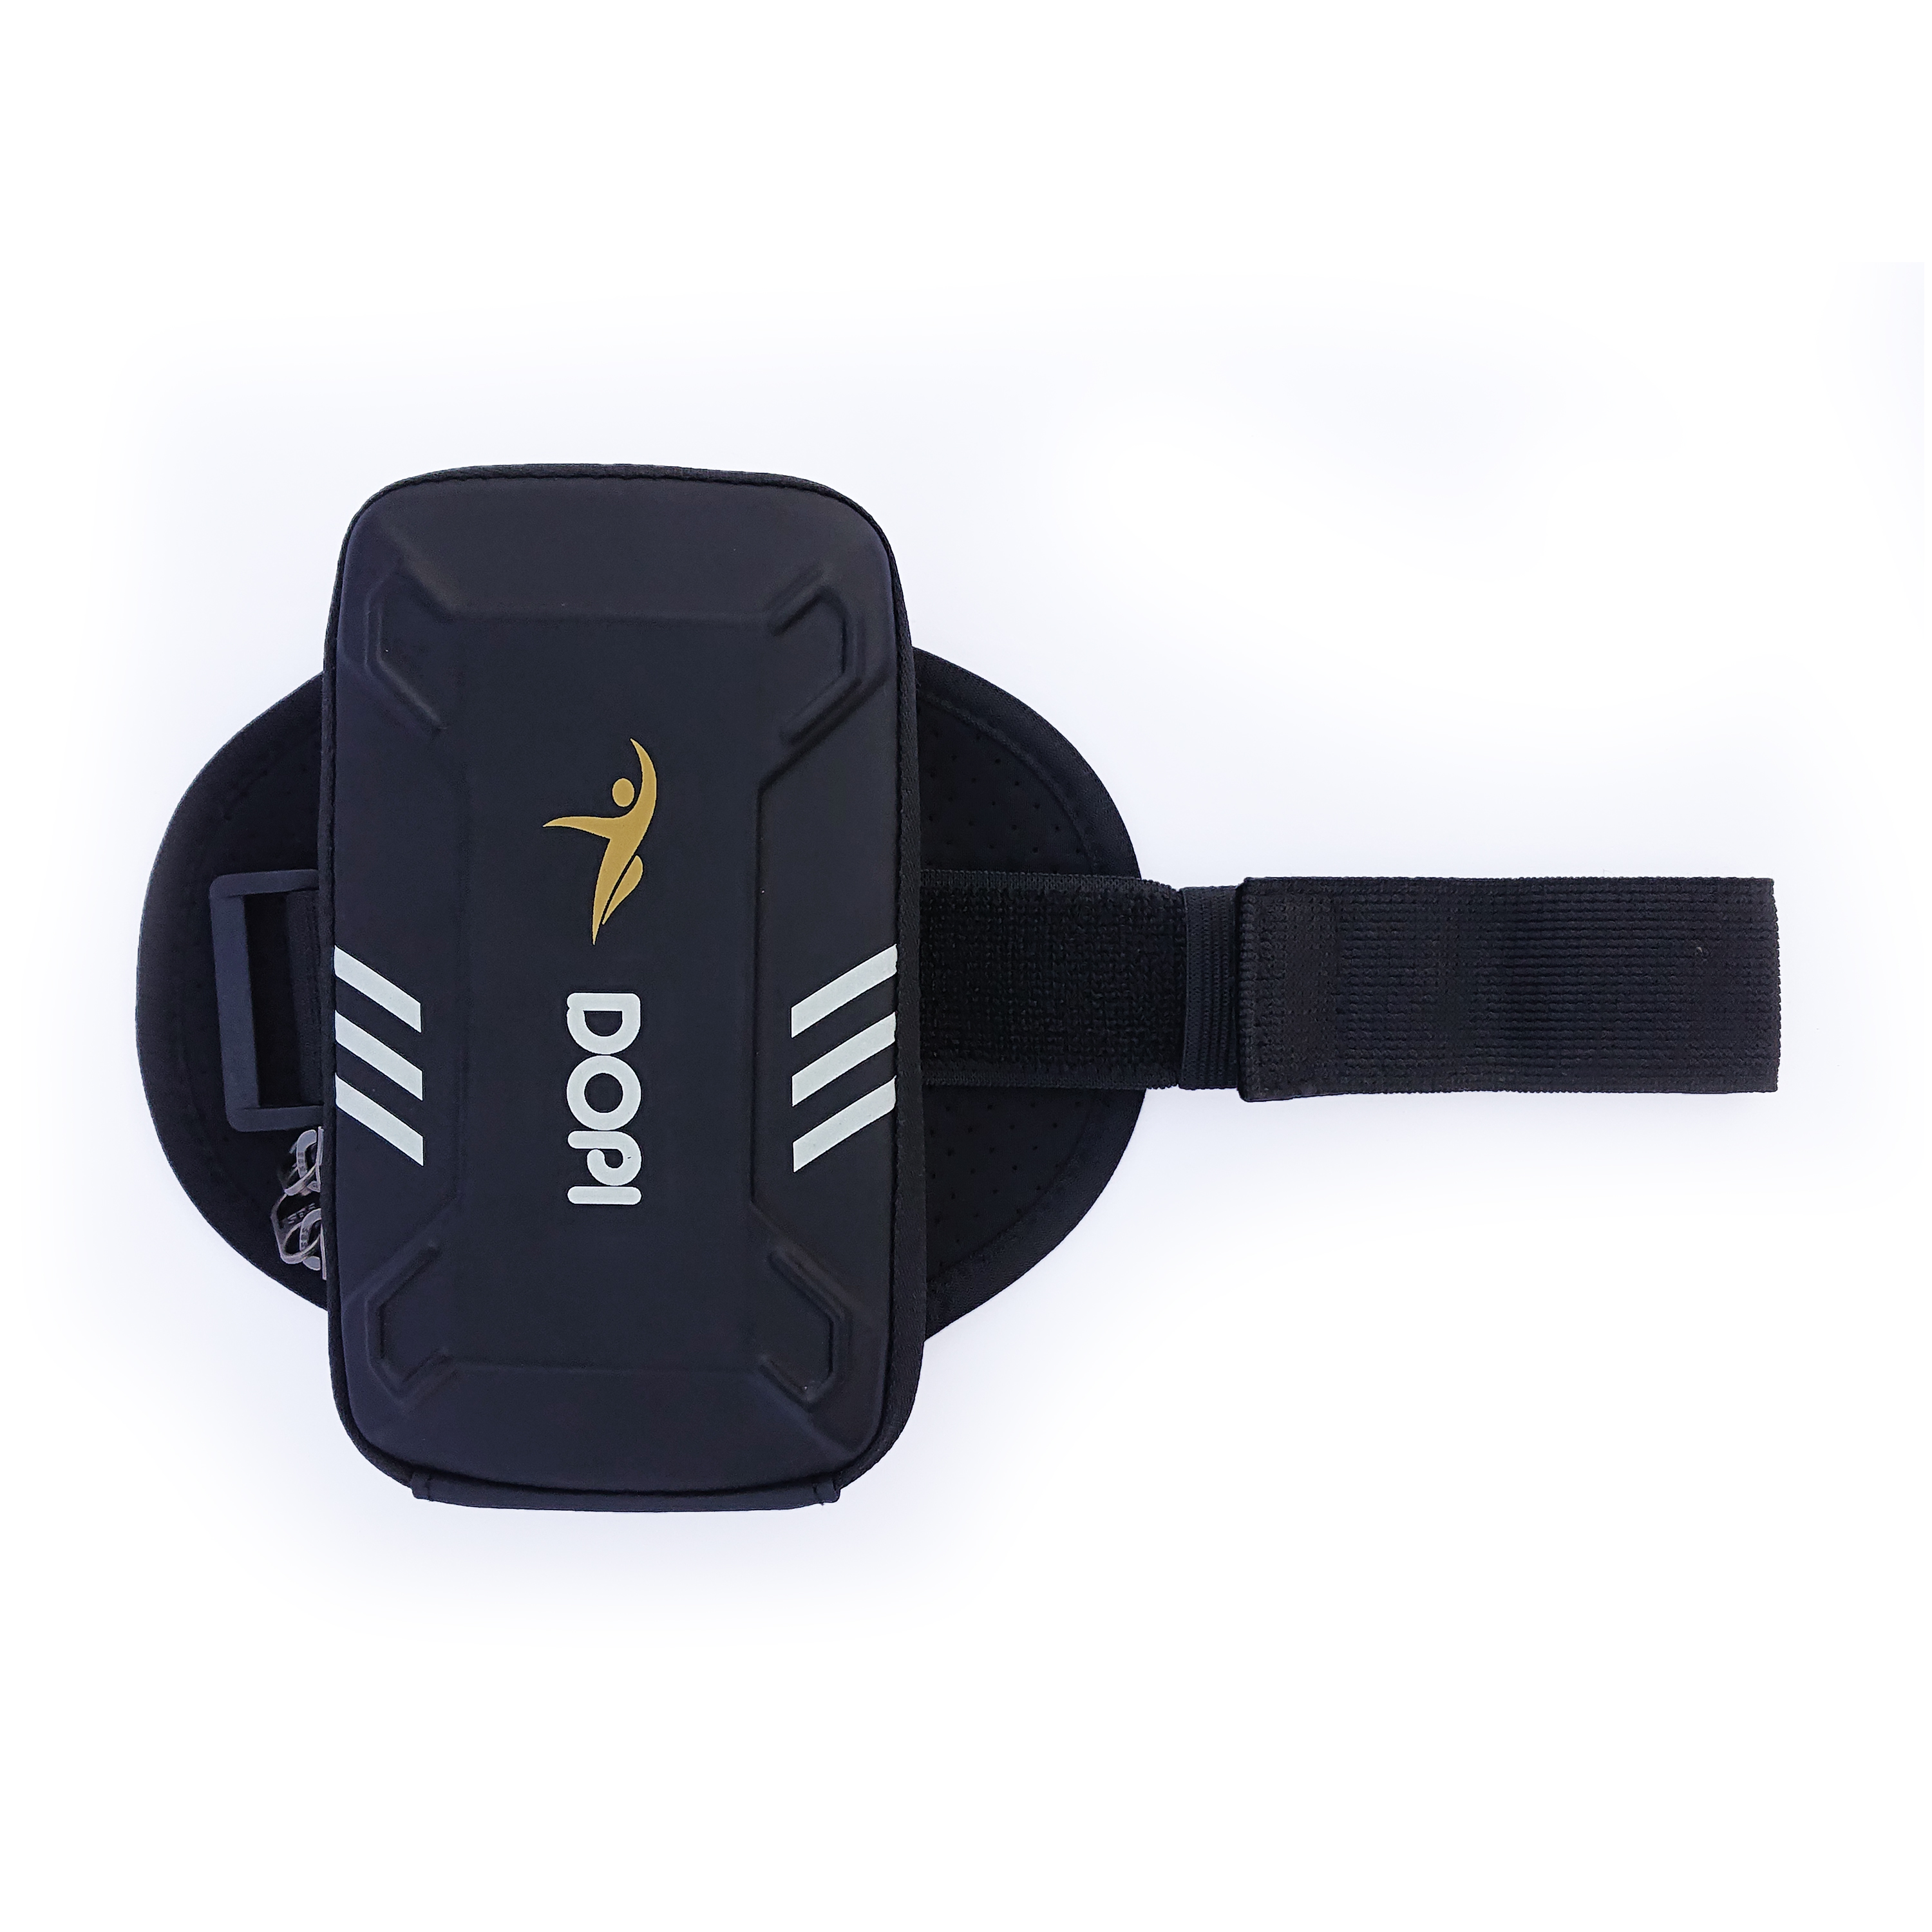 Bao đeo tay đựng điện thoại chạy bộ, thể thao DOPI360 cao cấp DOPI18